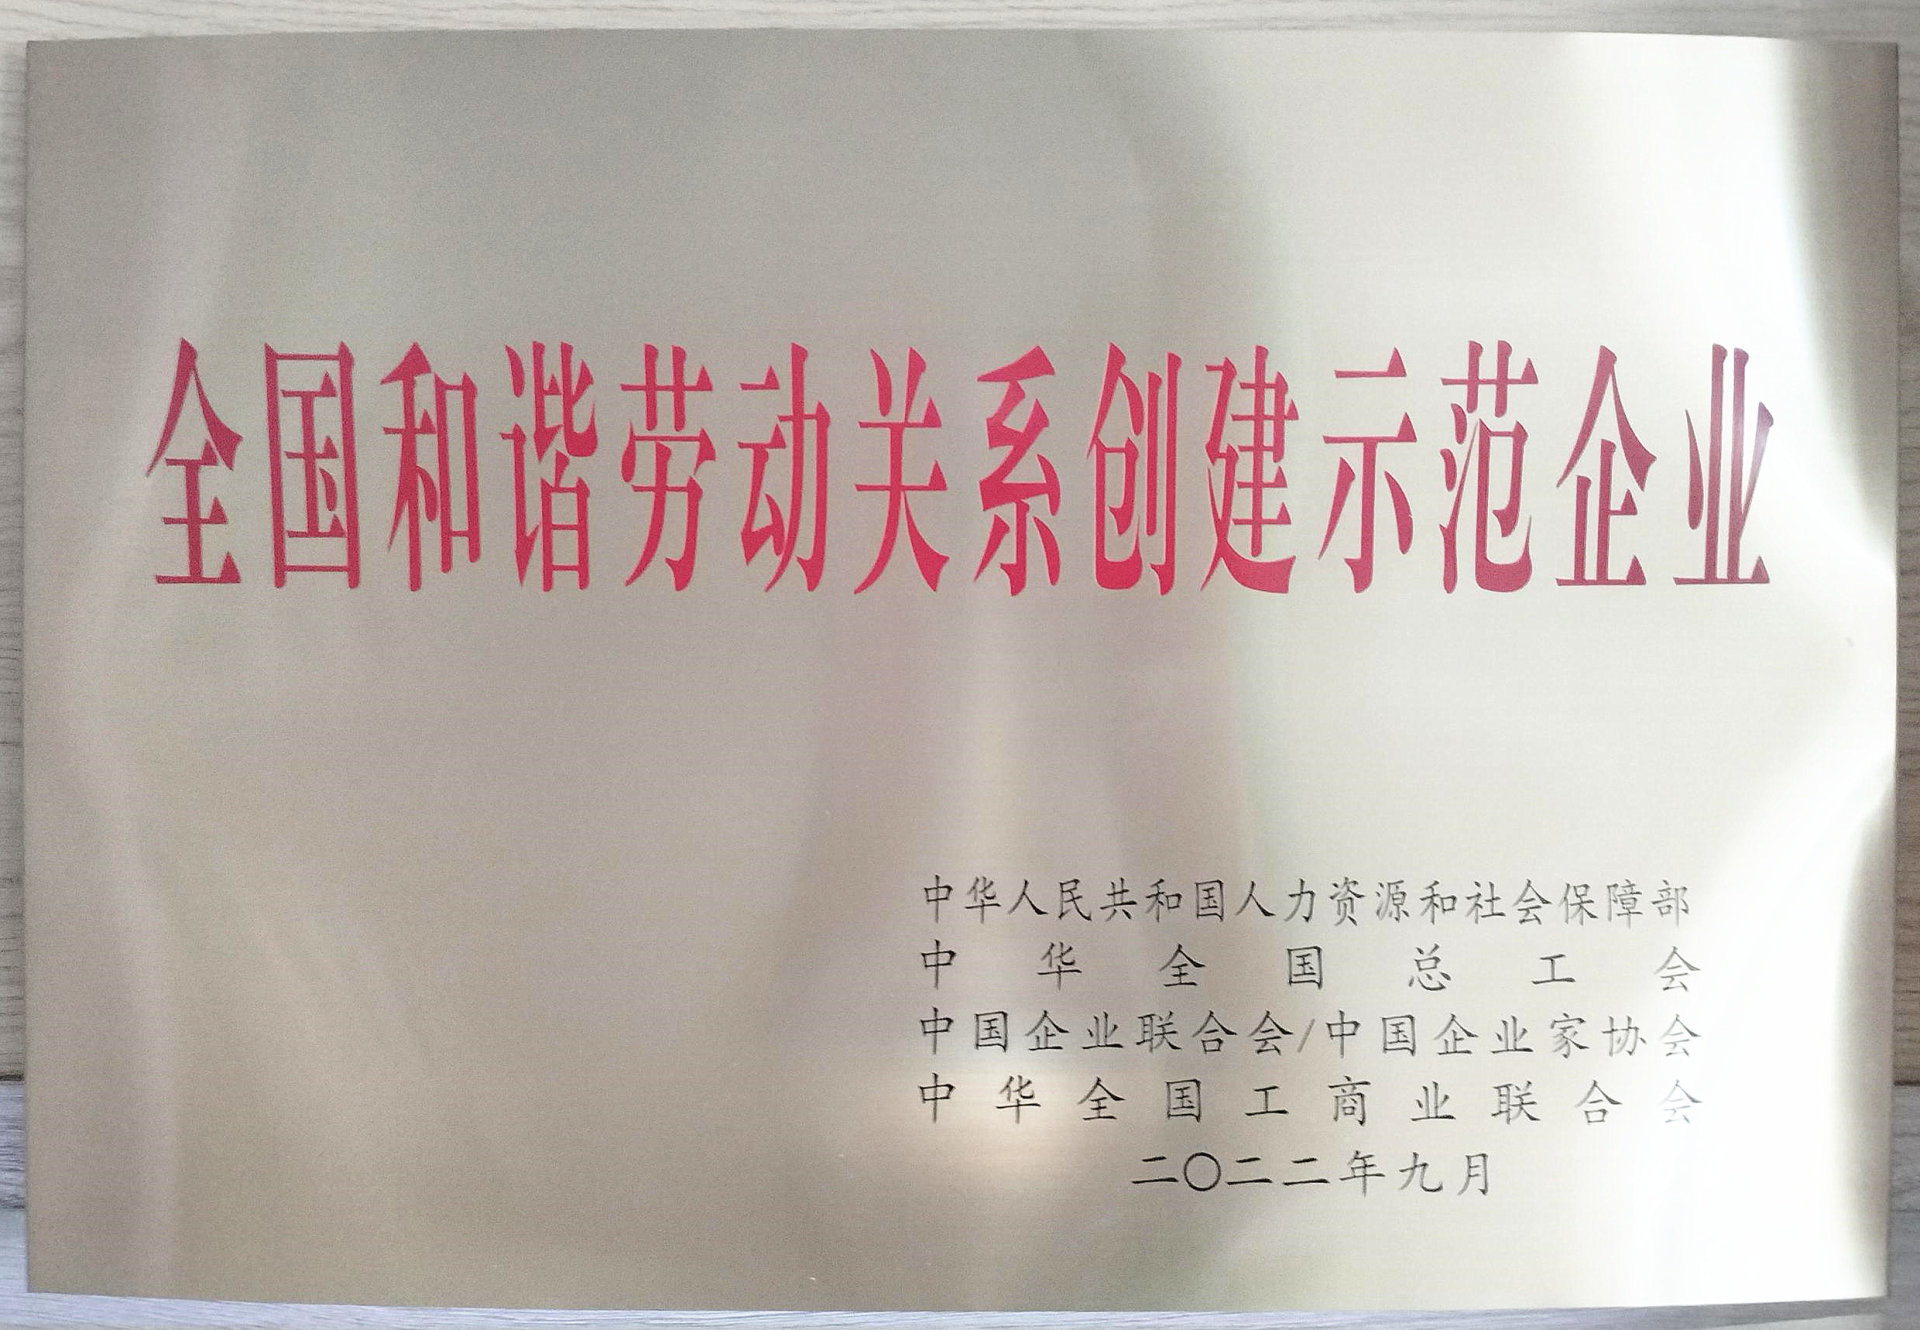 宇峰公司荣获“全国和谐劳动关系创建示范企业”称号